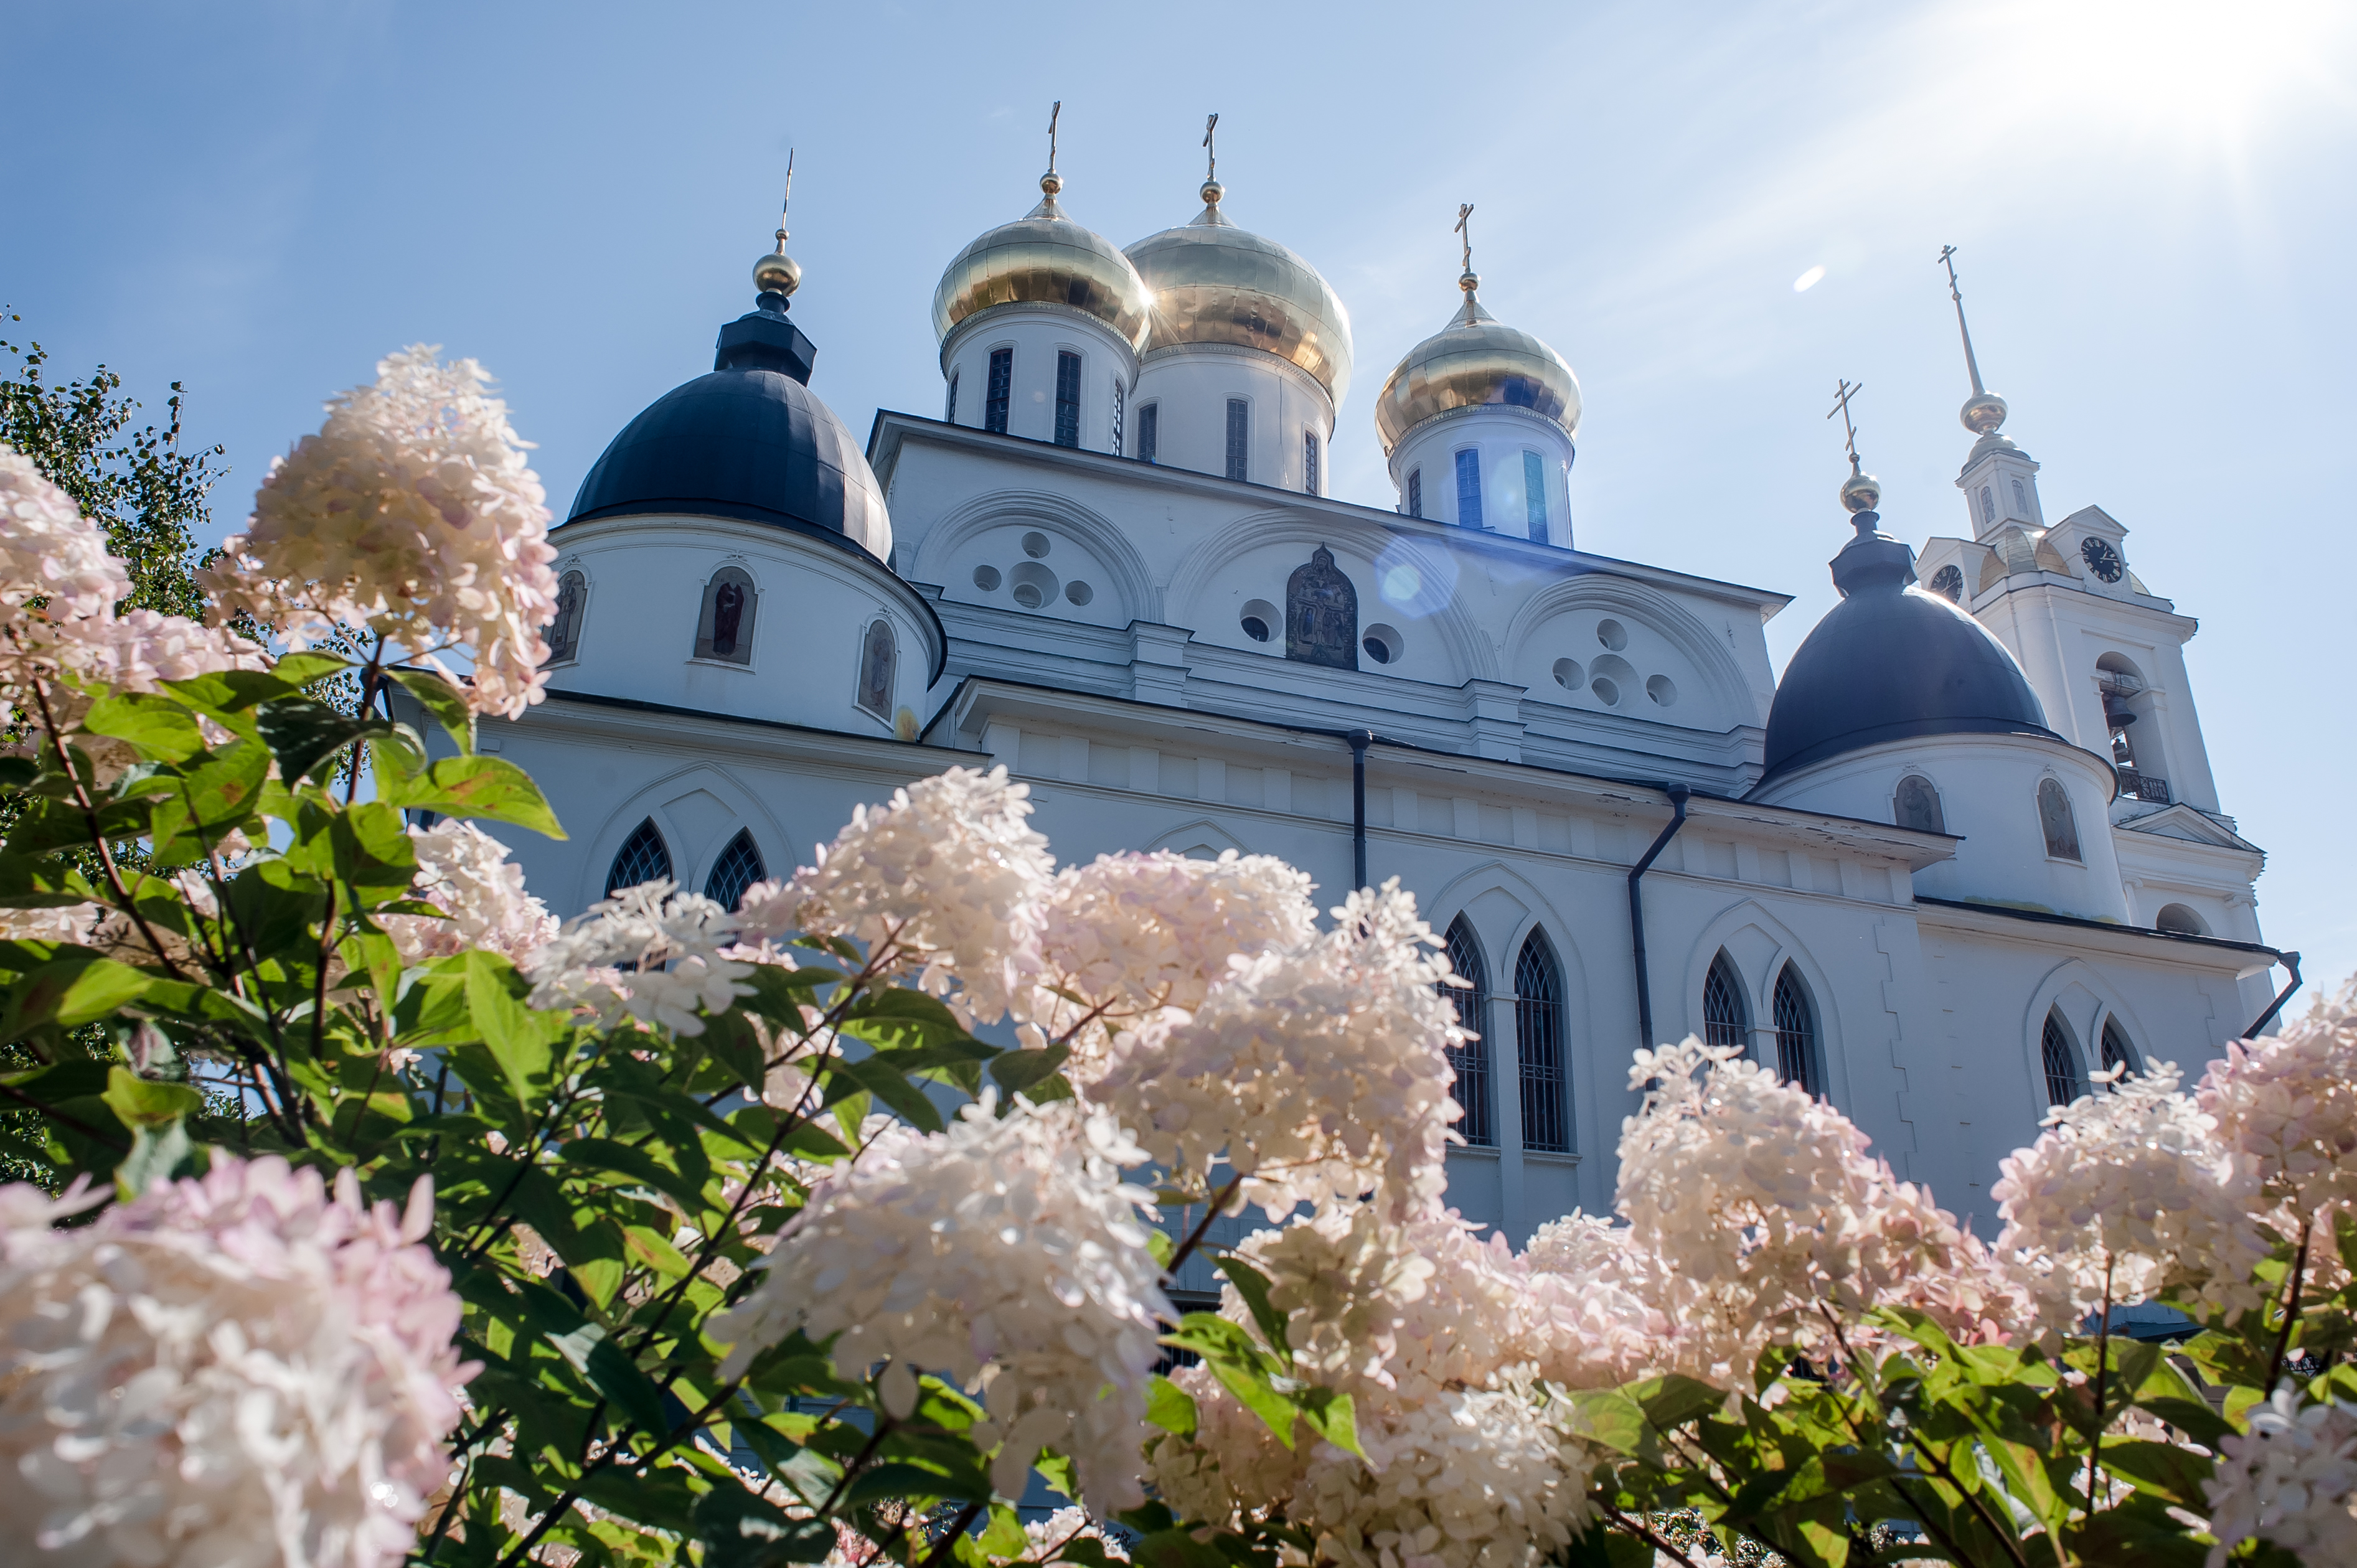 Успенский кафедральный собор строился в начале XVI века, когда Дмитровом правил князь Юрий Иванович, брат московского князя Василия III 